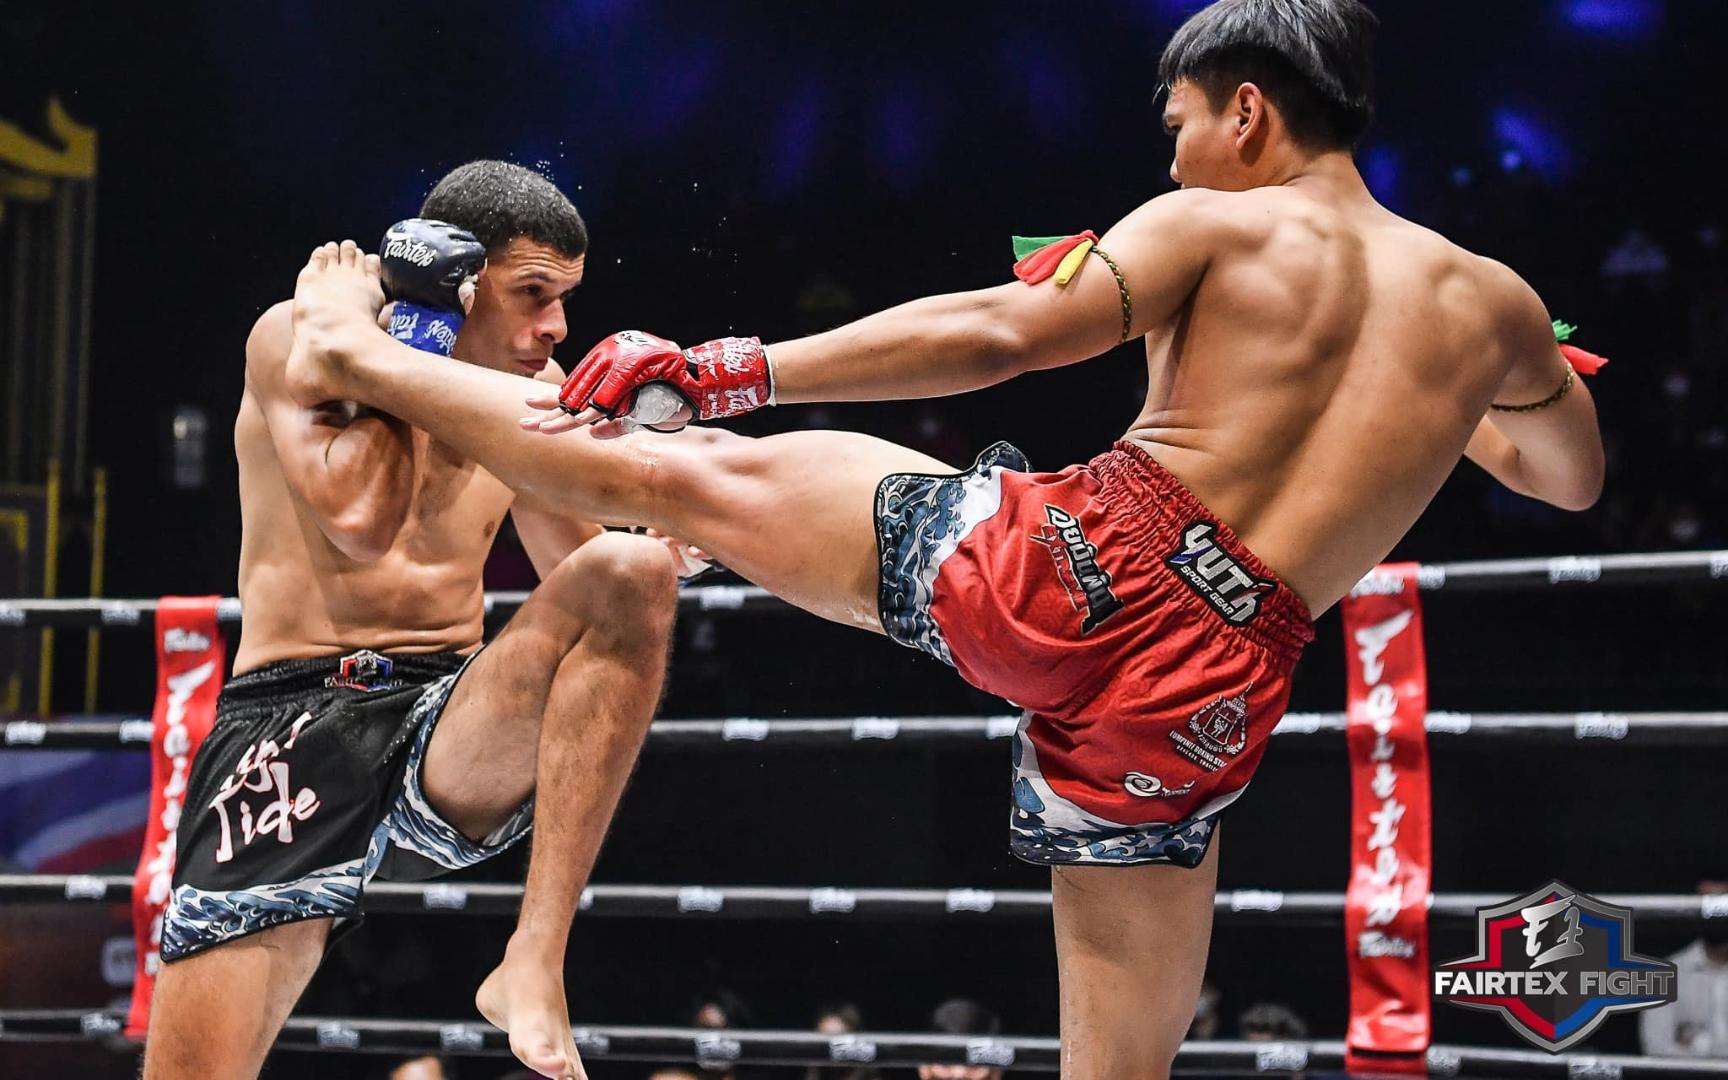 极限泰拳60公斤级泰国选手帕拉特vs墨西哥选手胡安·冈萨雷斯